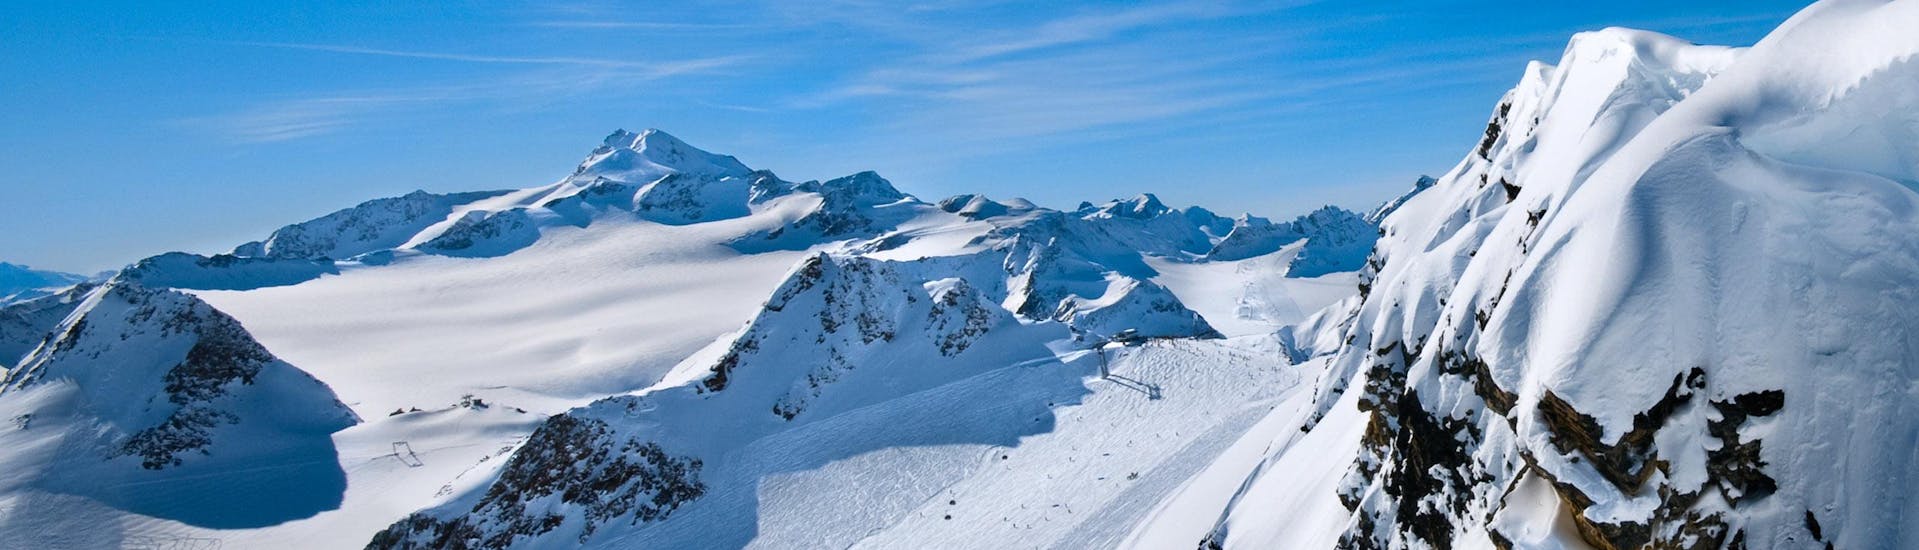 Tijdens een skiles met een skischool in Białka Tatrzańska heb je een prachtig uitzicht op zonnige bergen.